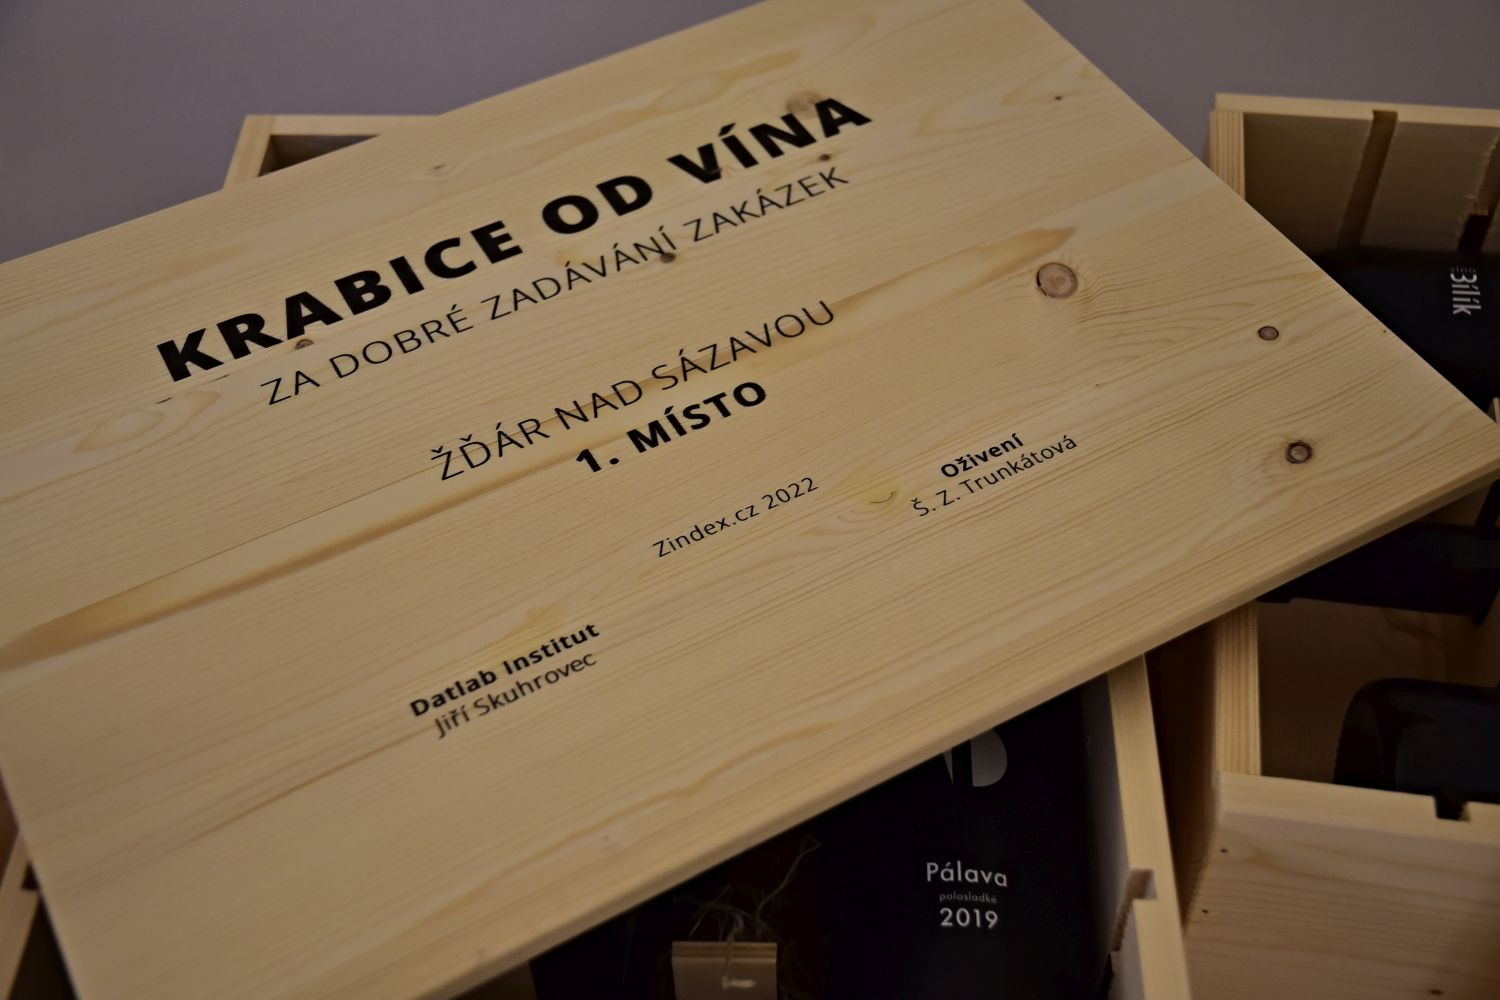 Trofej v podobě Krabice od vína